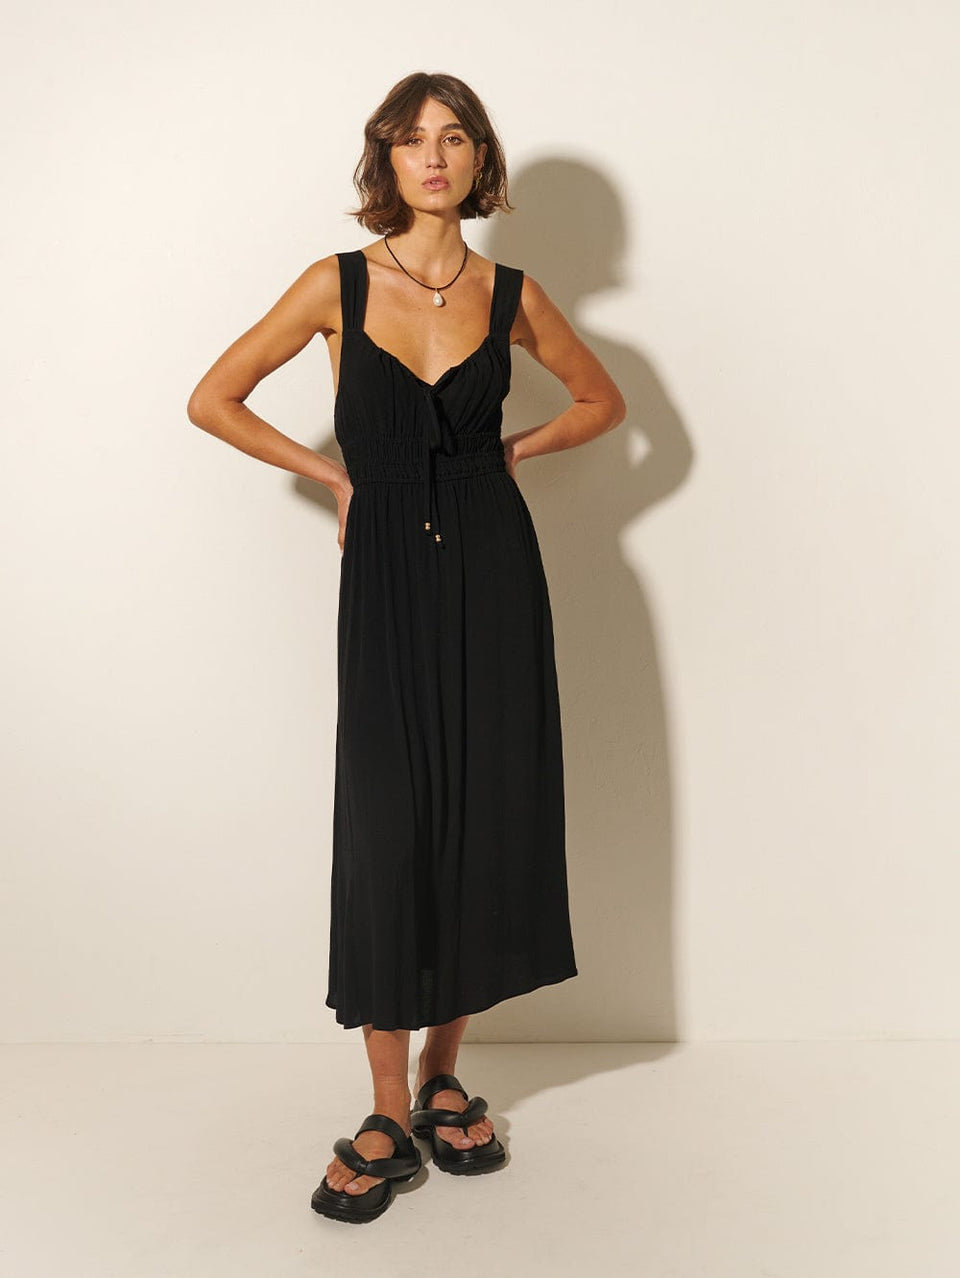 Maria Strappy Midi Dress KIVARI | Model wears black midi dress